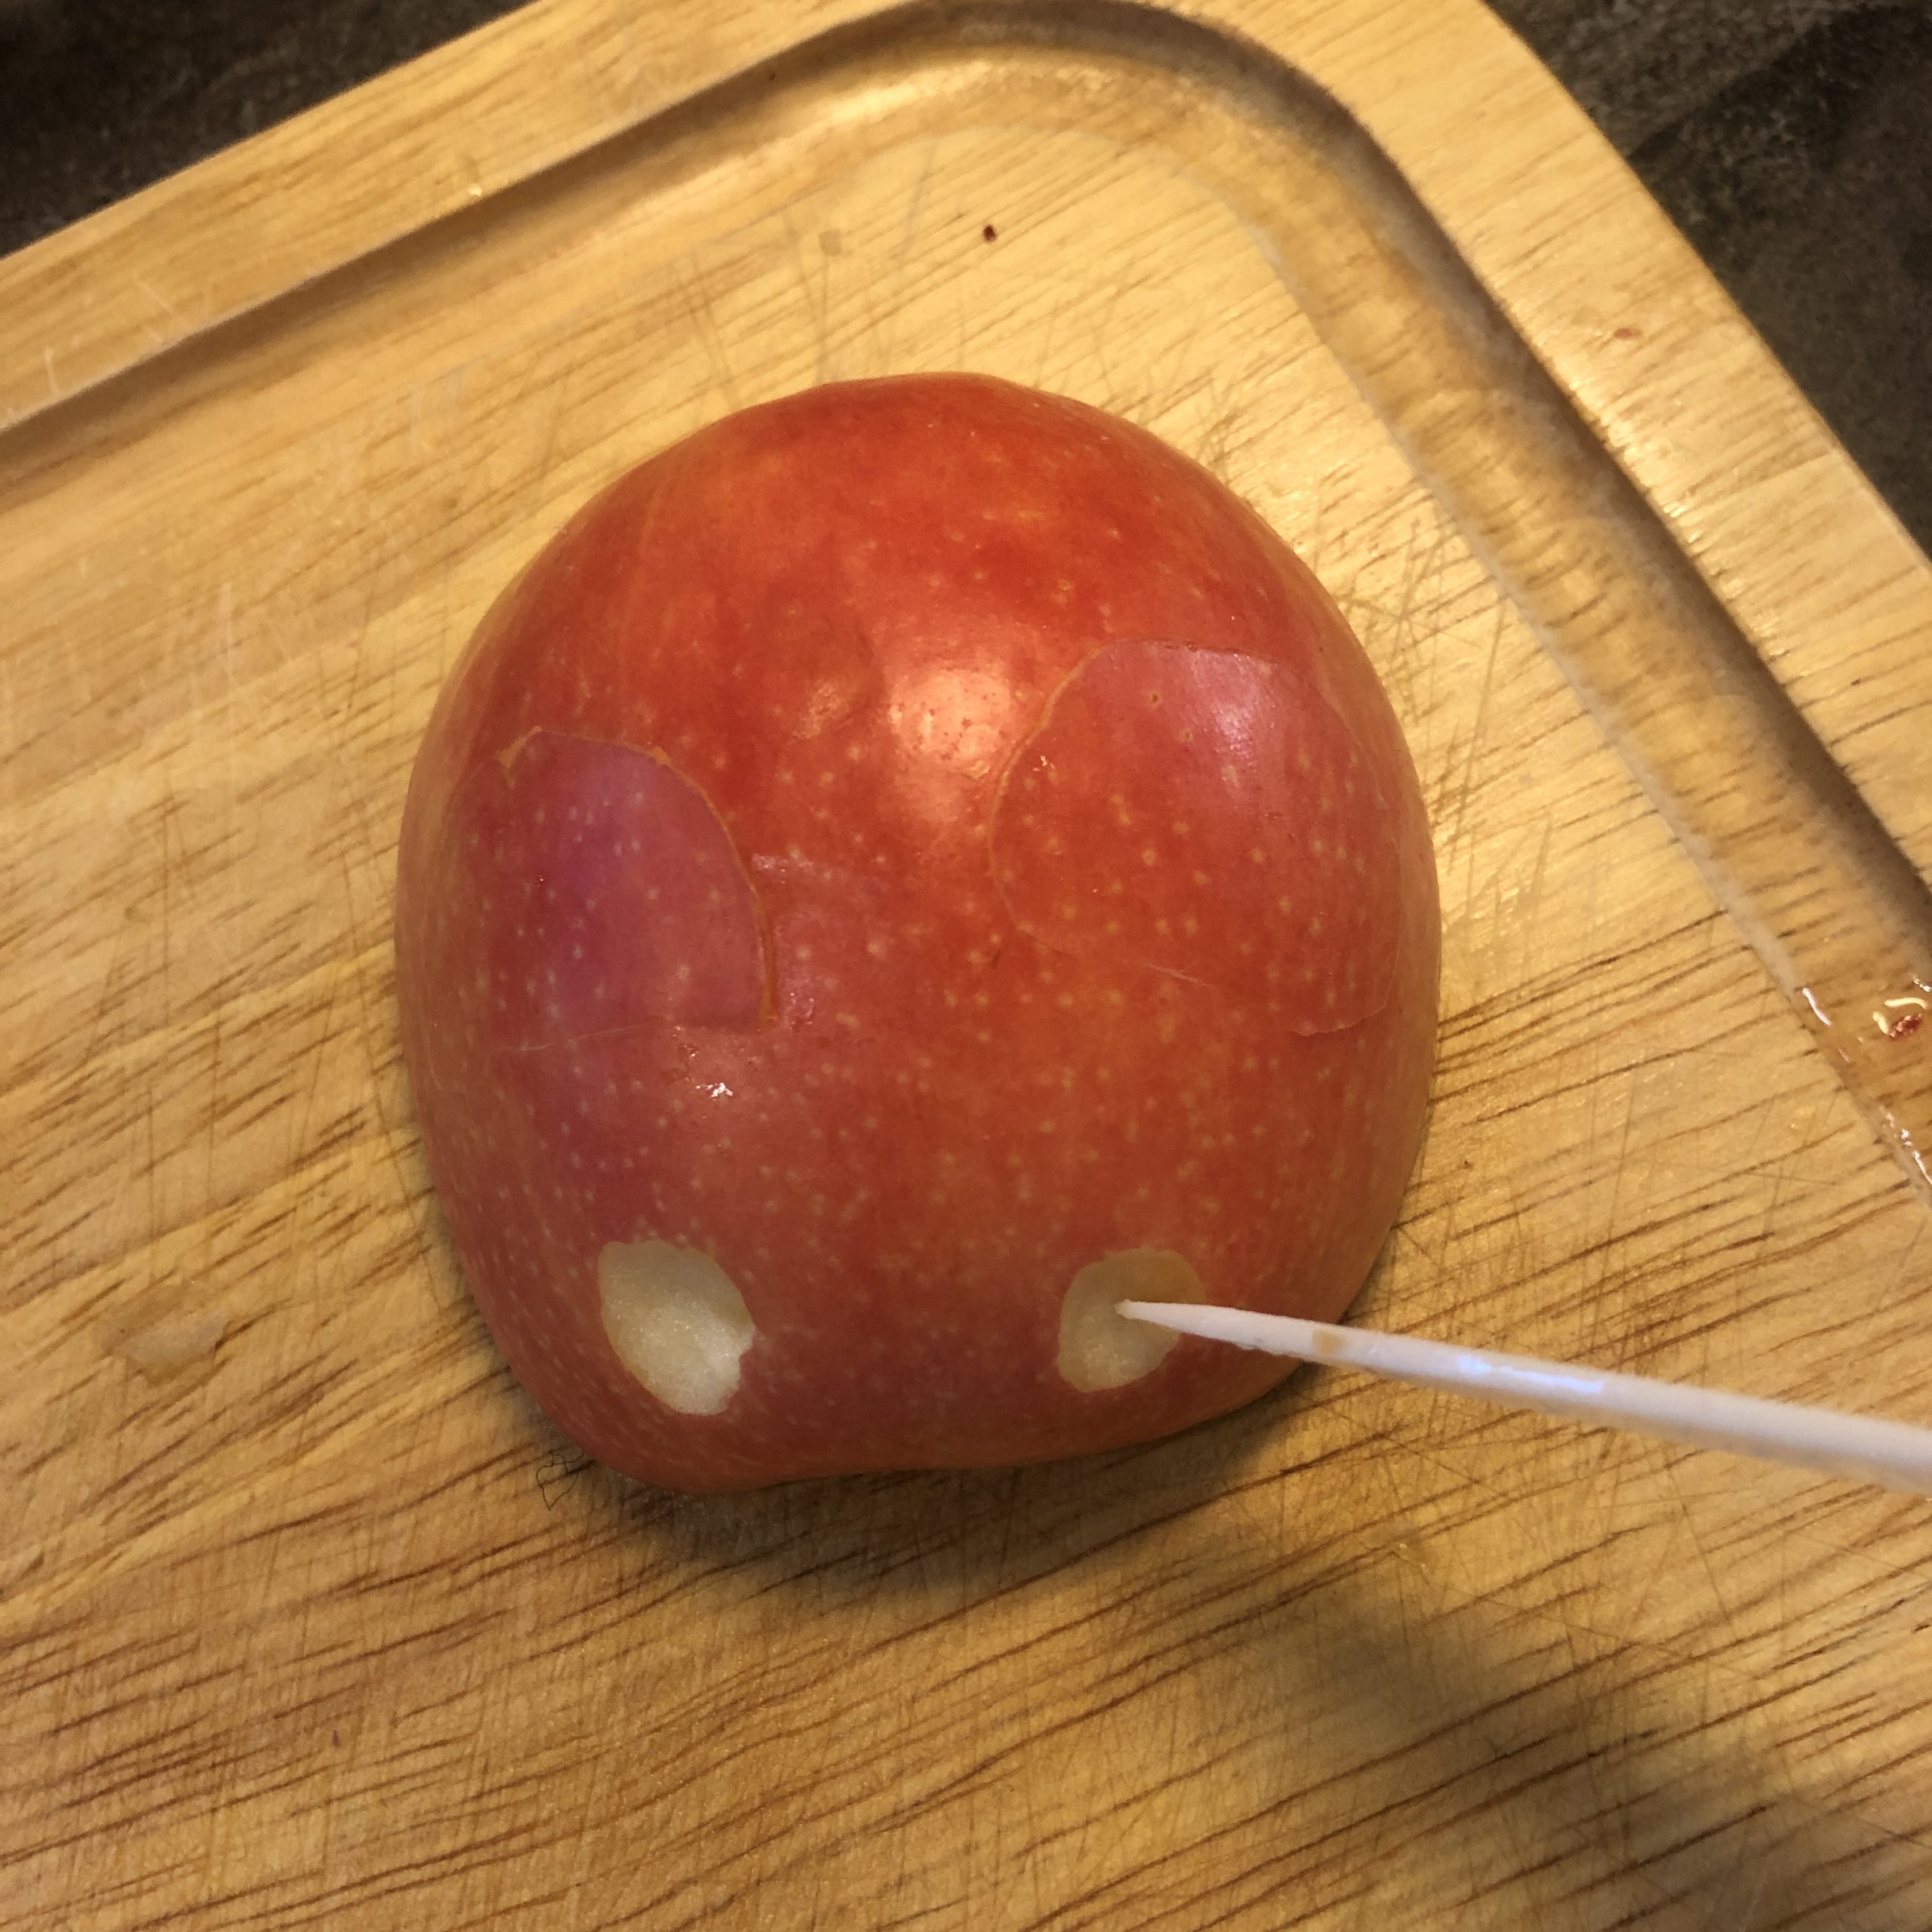 Bild zum Schritt 6 für das Bastel- und DIY-Abenteuer für Kinder: 'Mit der Messerspitze werden an einer Apfelhälfte zwei kleine „Augen“...'